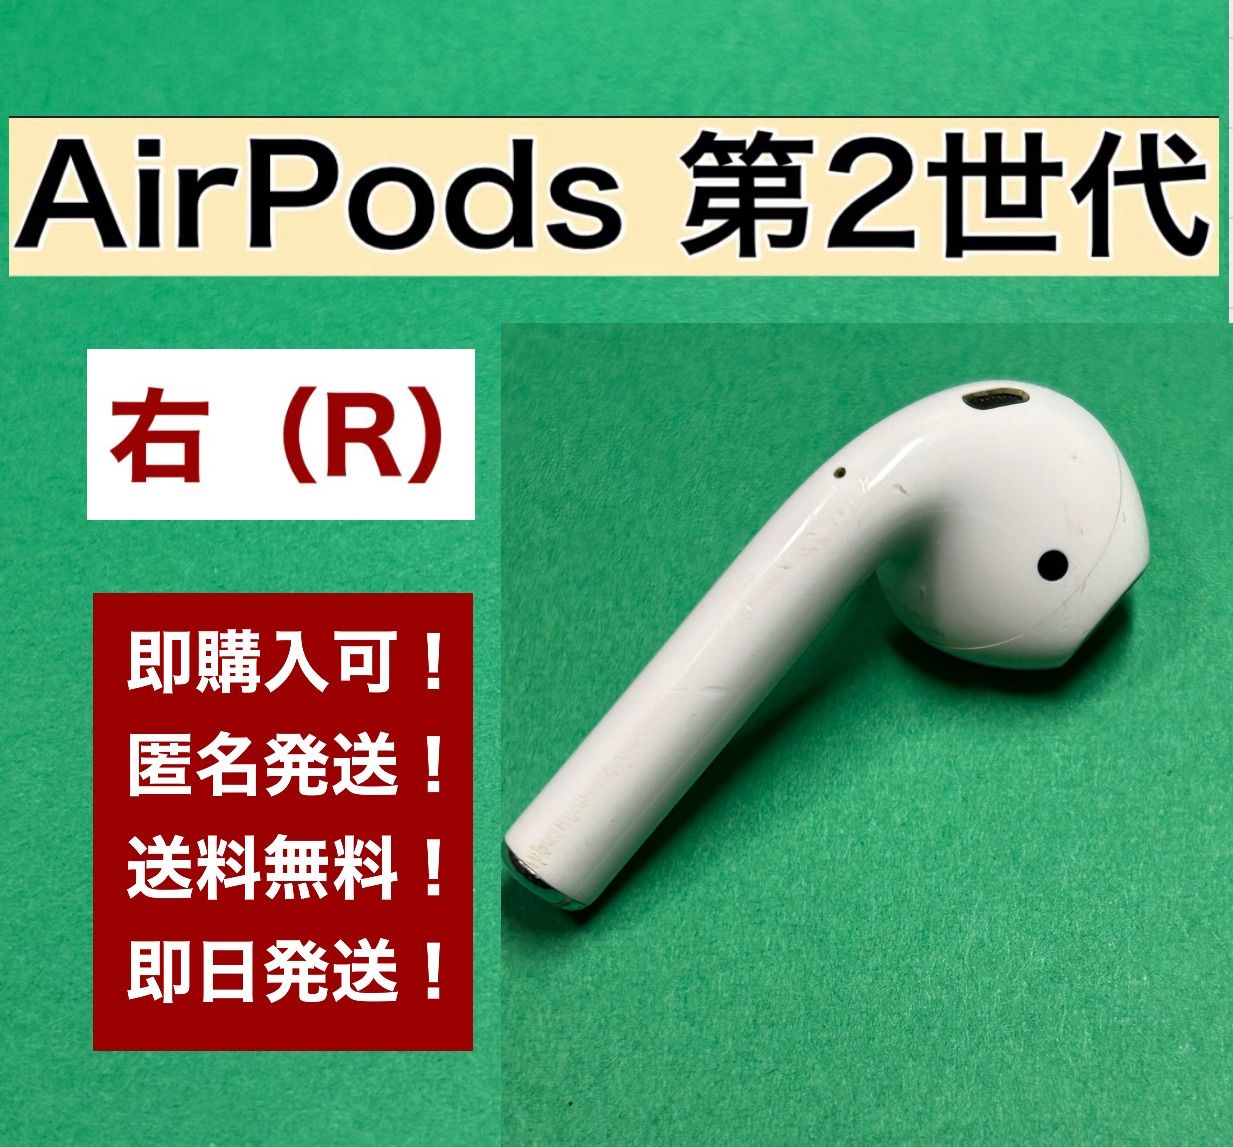 ケースにイ Apple AirPods 第2世代 R 右耳イヤホンのみ イヤホンの